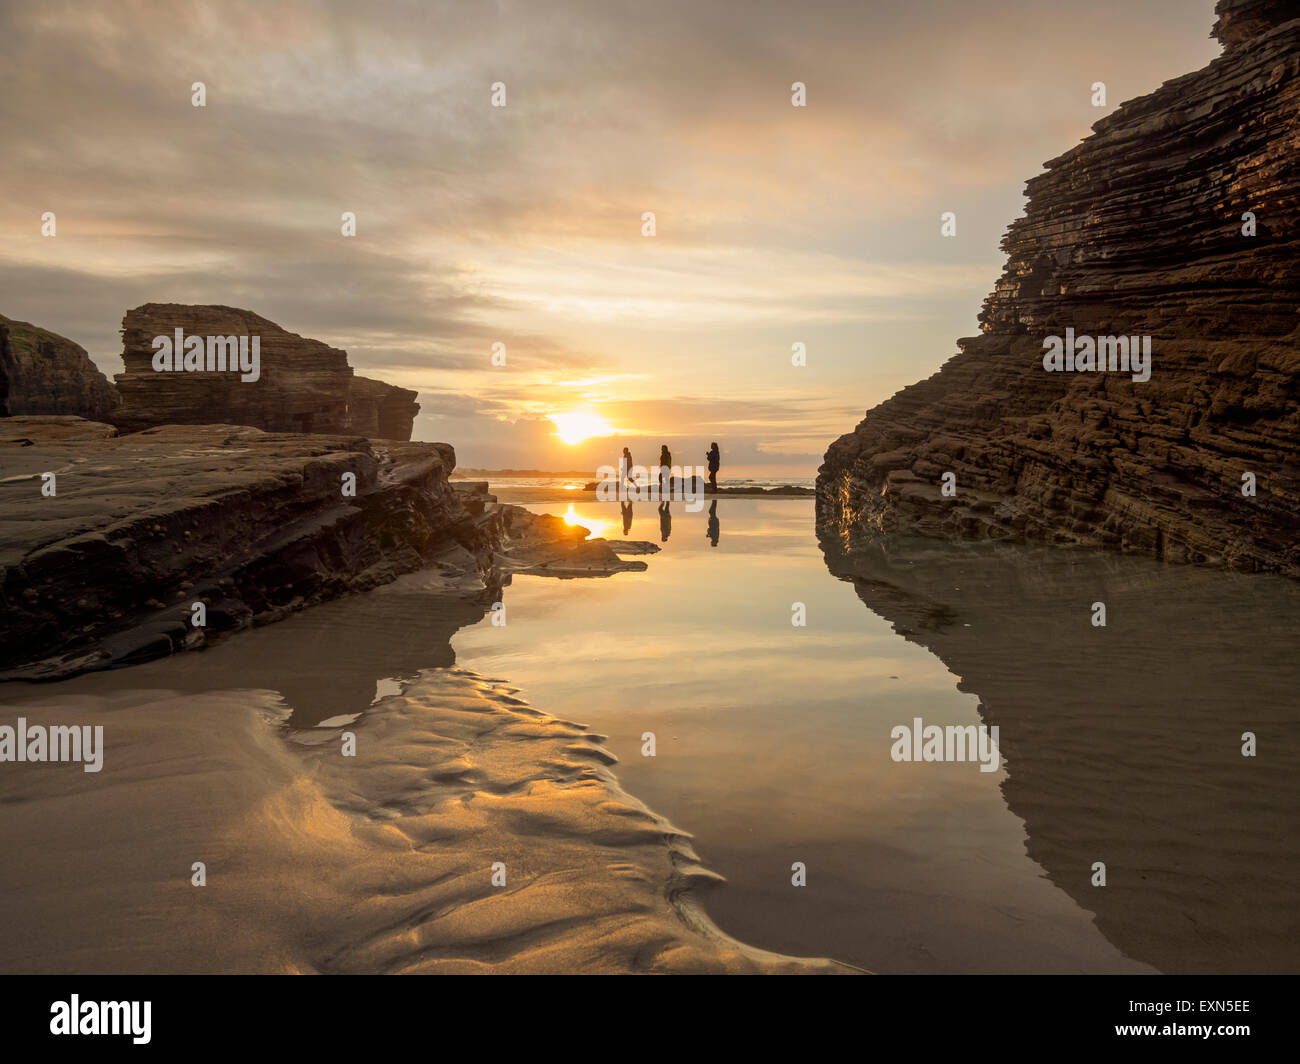 Spain, Galicia, Ribadeo, Playa de Aguas Santas at sunset, small persons at beach Stock Photo